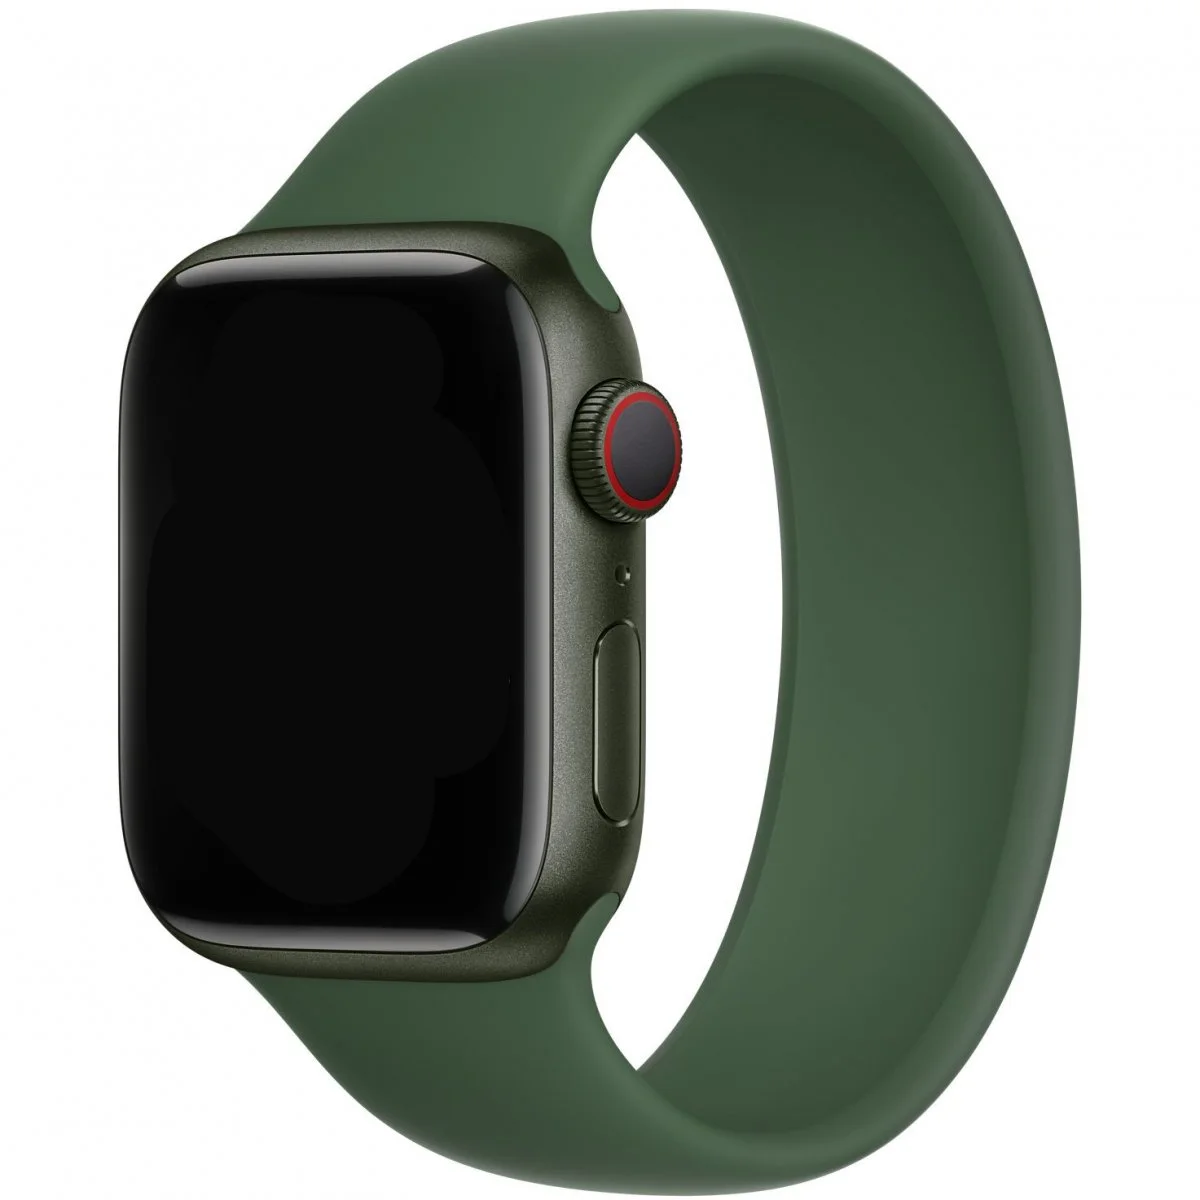 Řemínek iMore Solo Loop Apple Watch Series 1/2/3 42mm - Jetelově zelená (XS)